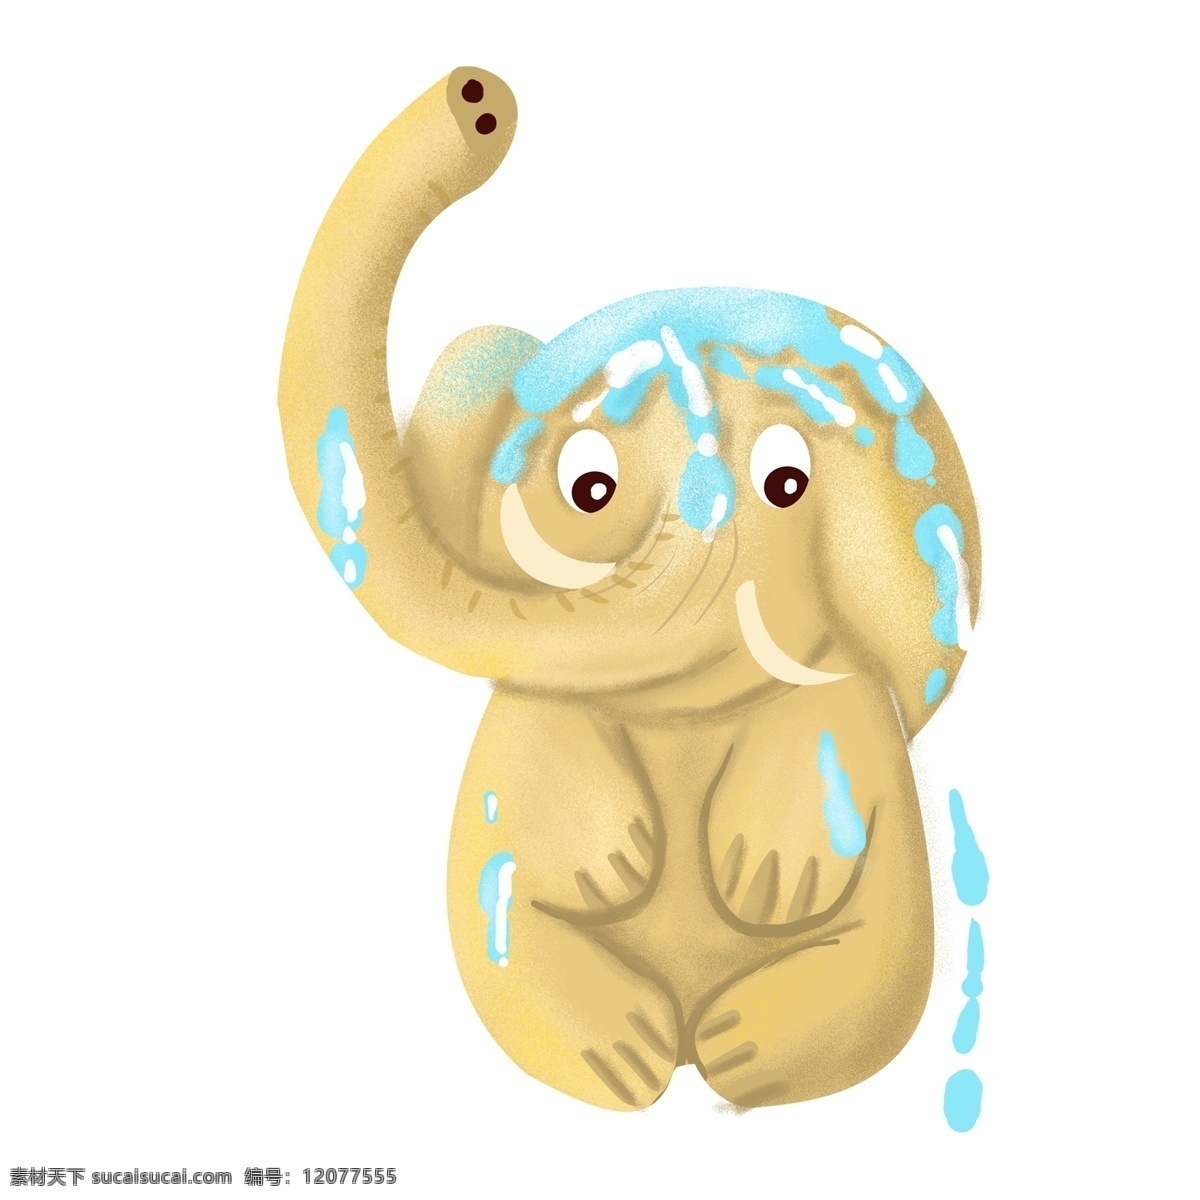 呆 萌 可爱 自己 洗澡 大象 卡通 呆萌 动物 插画